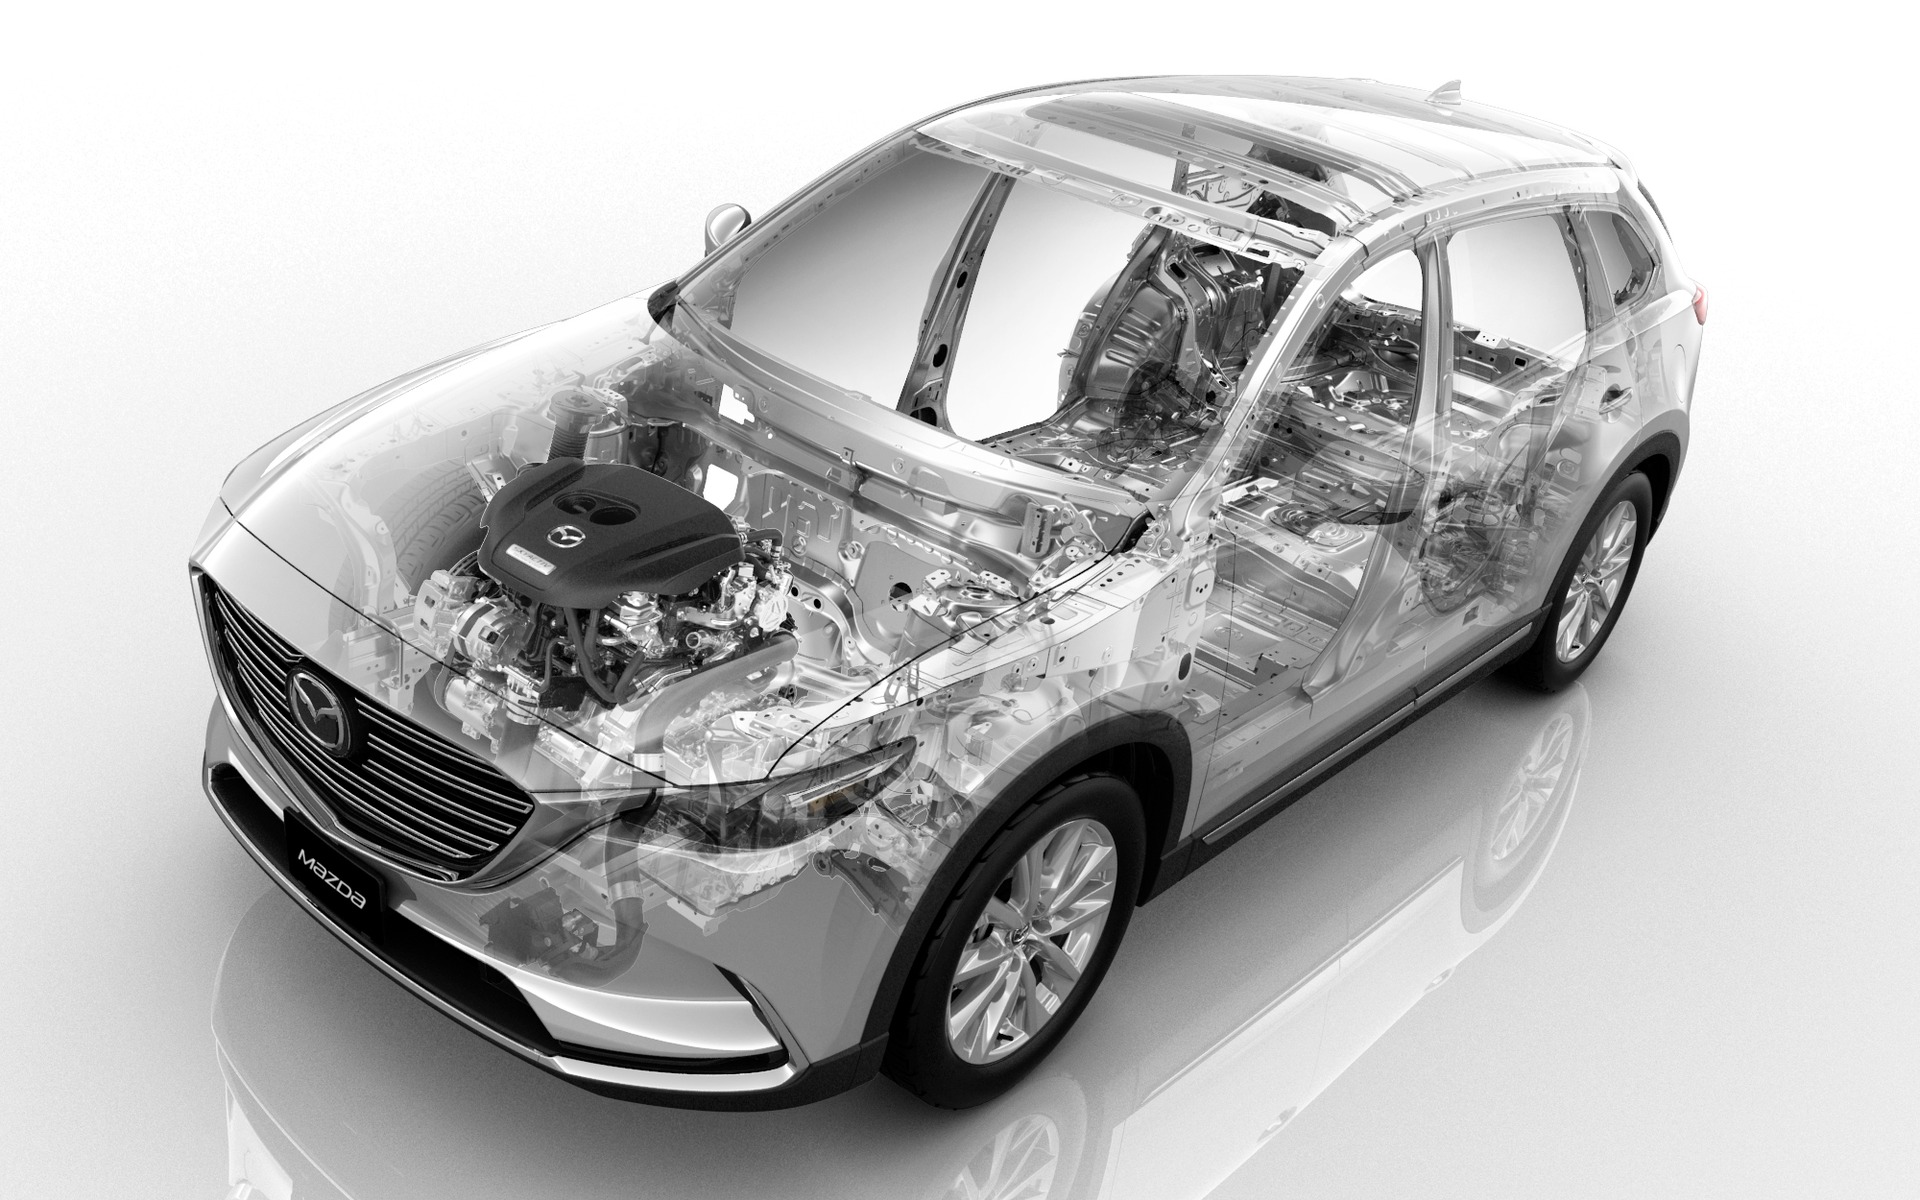 Mazda CX-9 2016 - Structure et éléments mécaniques exposés.